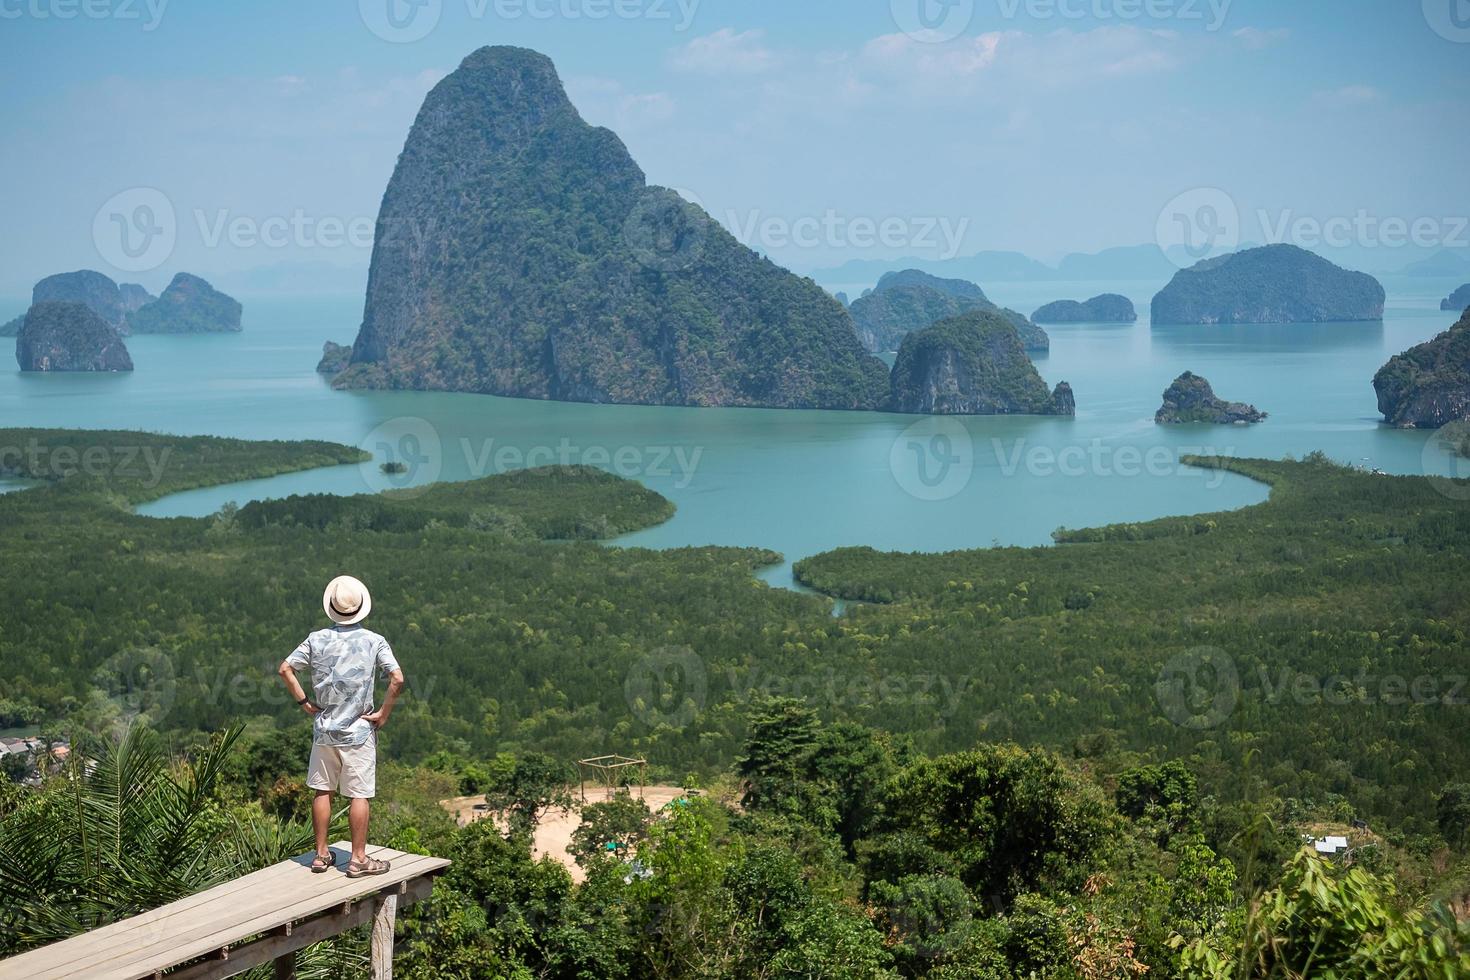 gelukkige reiziger man geniet van phang nga baai uitkijkpunt, alleen toerist die staat en ontspant in samet nang she, in de buurt van phuket in het zuiden van thailand. Zuidoost-Azië reizen, reis en zomervakantie concept foto